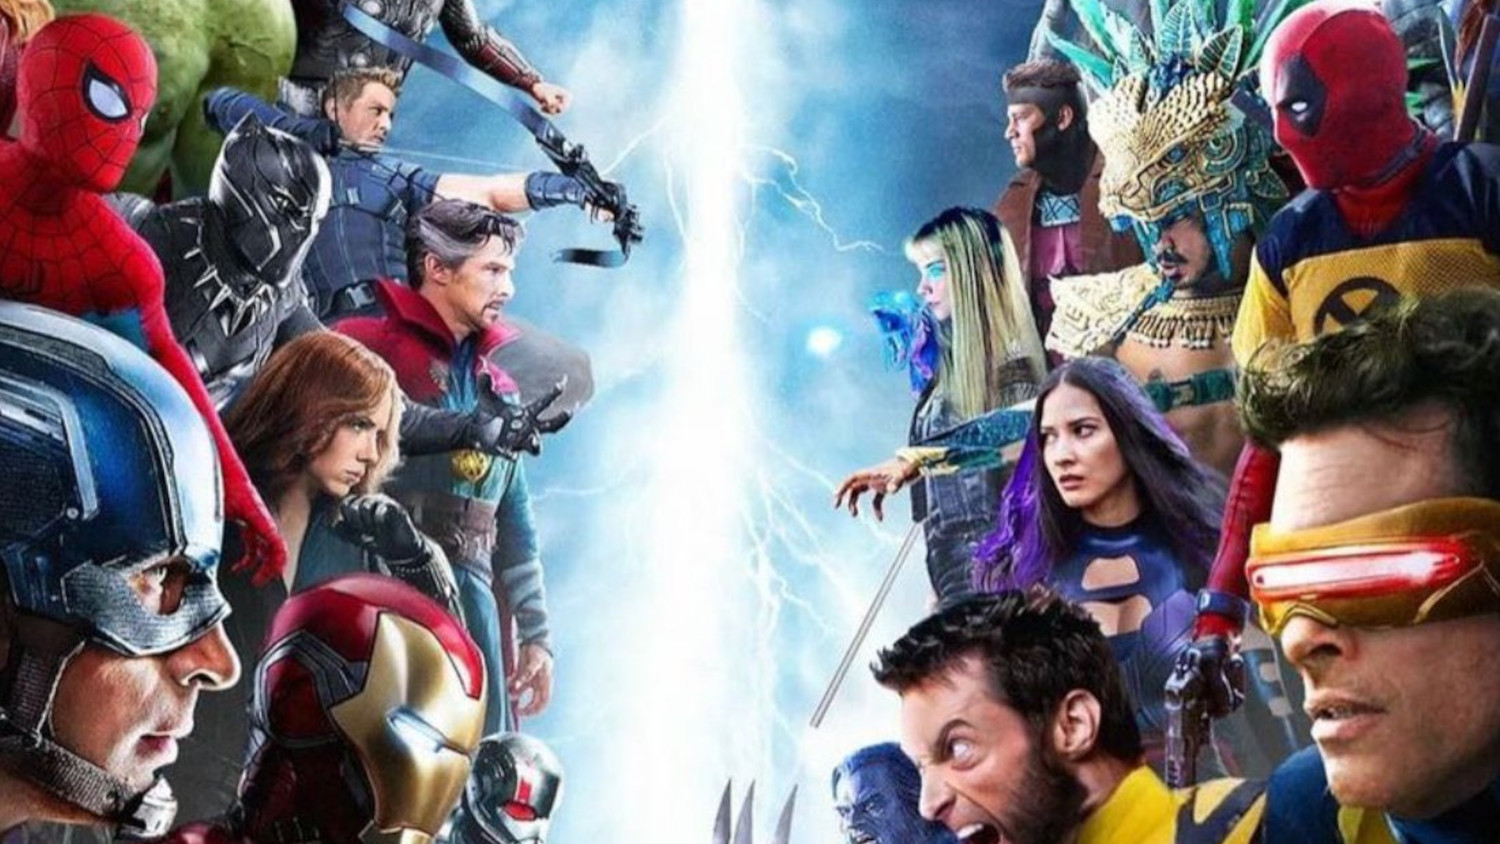 Avengers vs. X-Men Is Happening Says Rumor